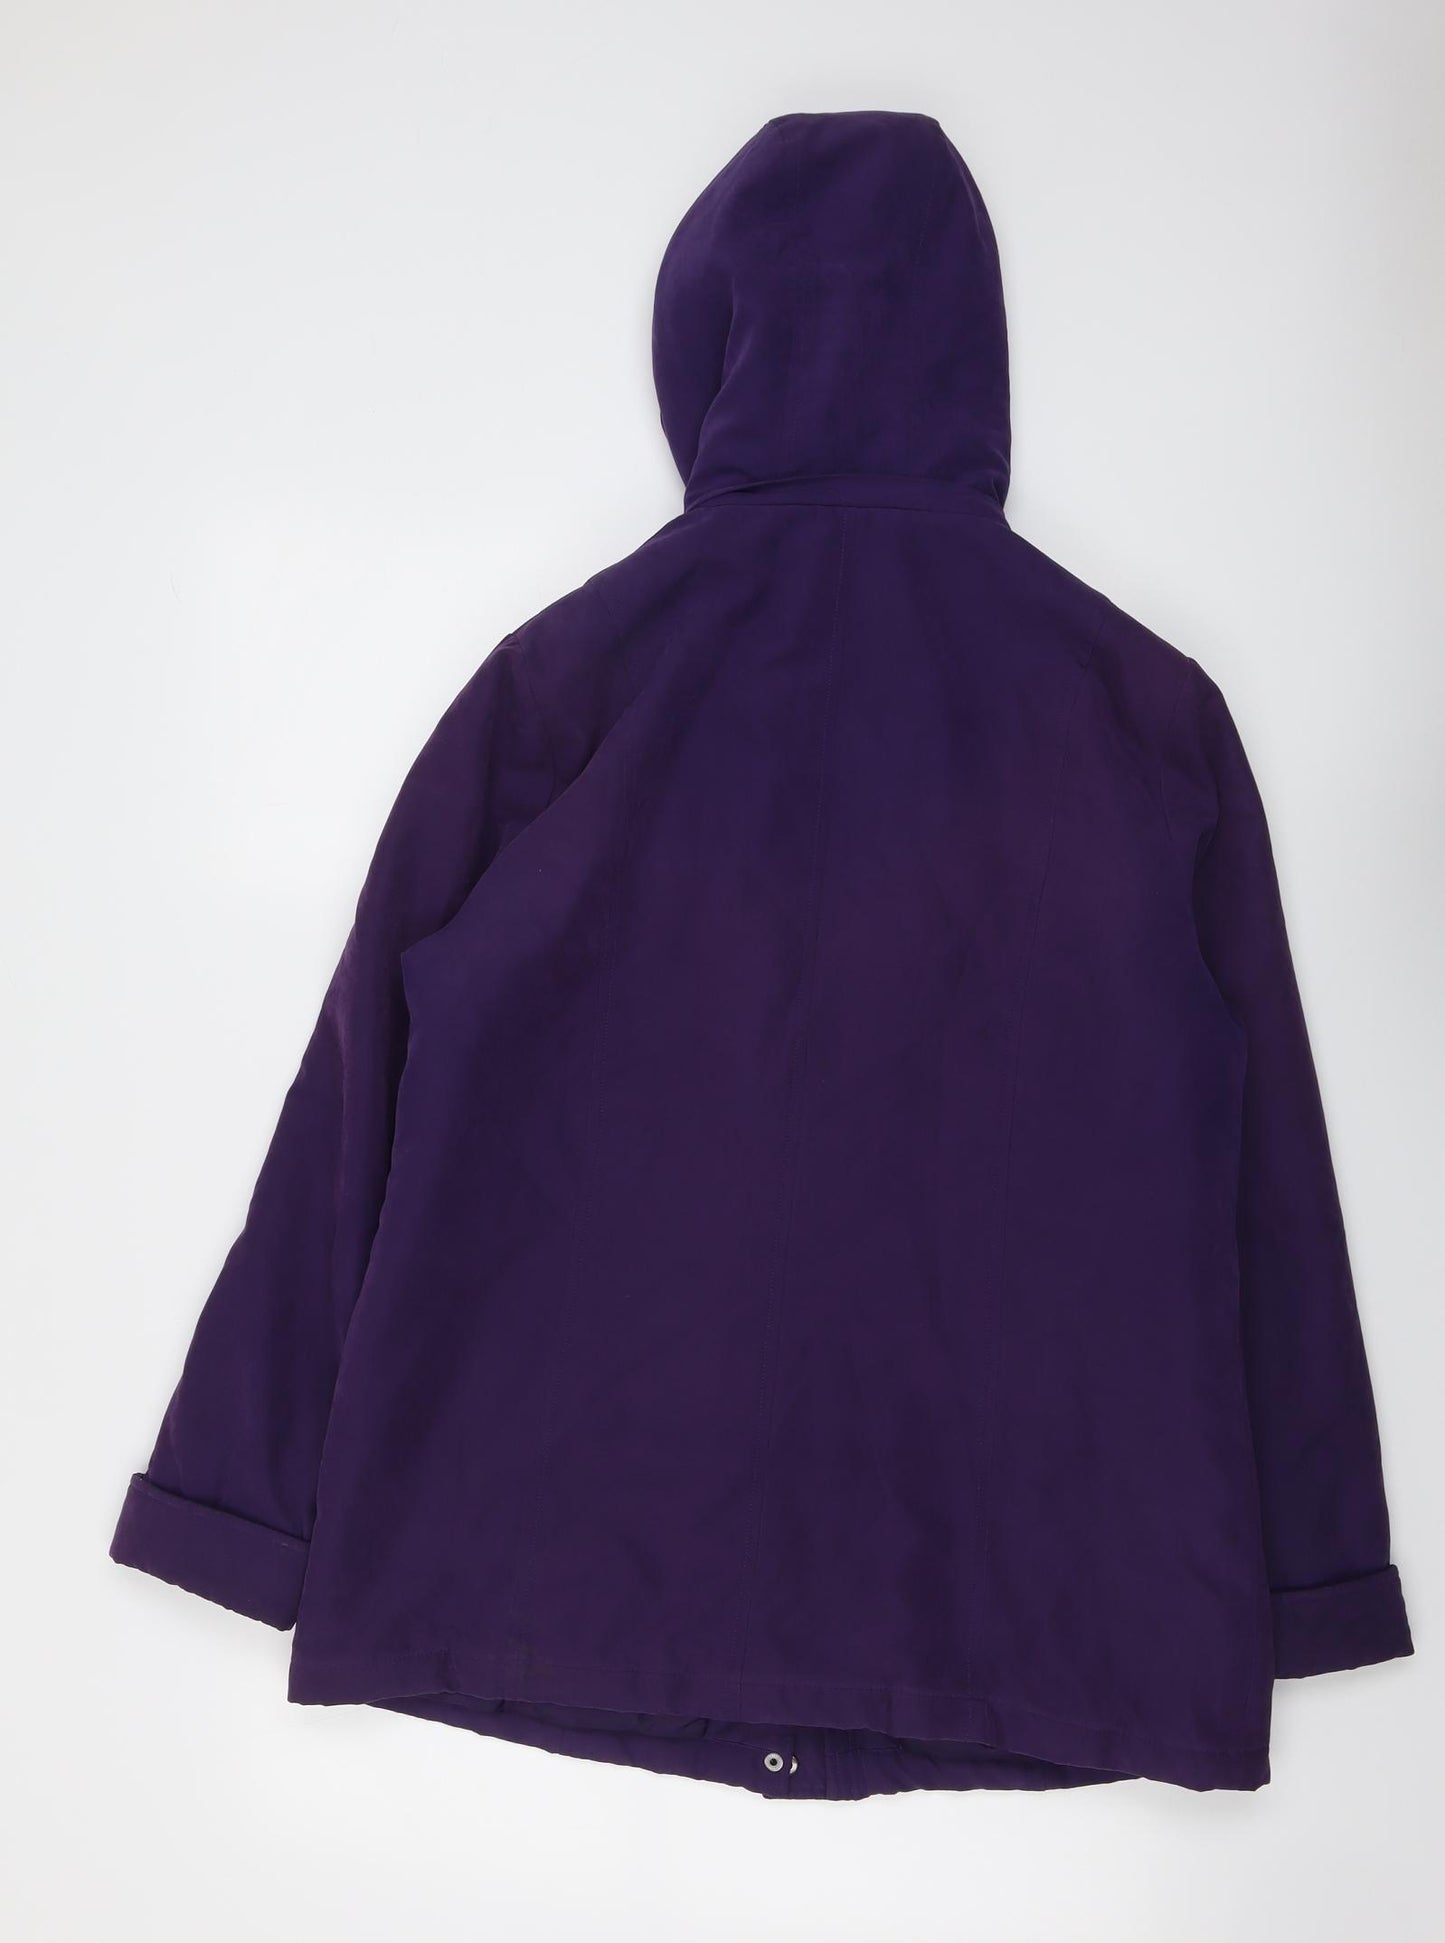 First Avenue Womens Purple Jacket Size 12 Zip